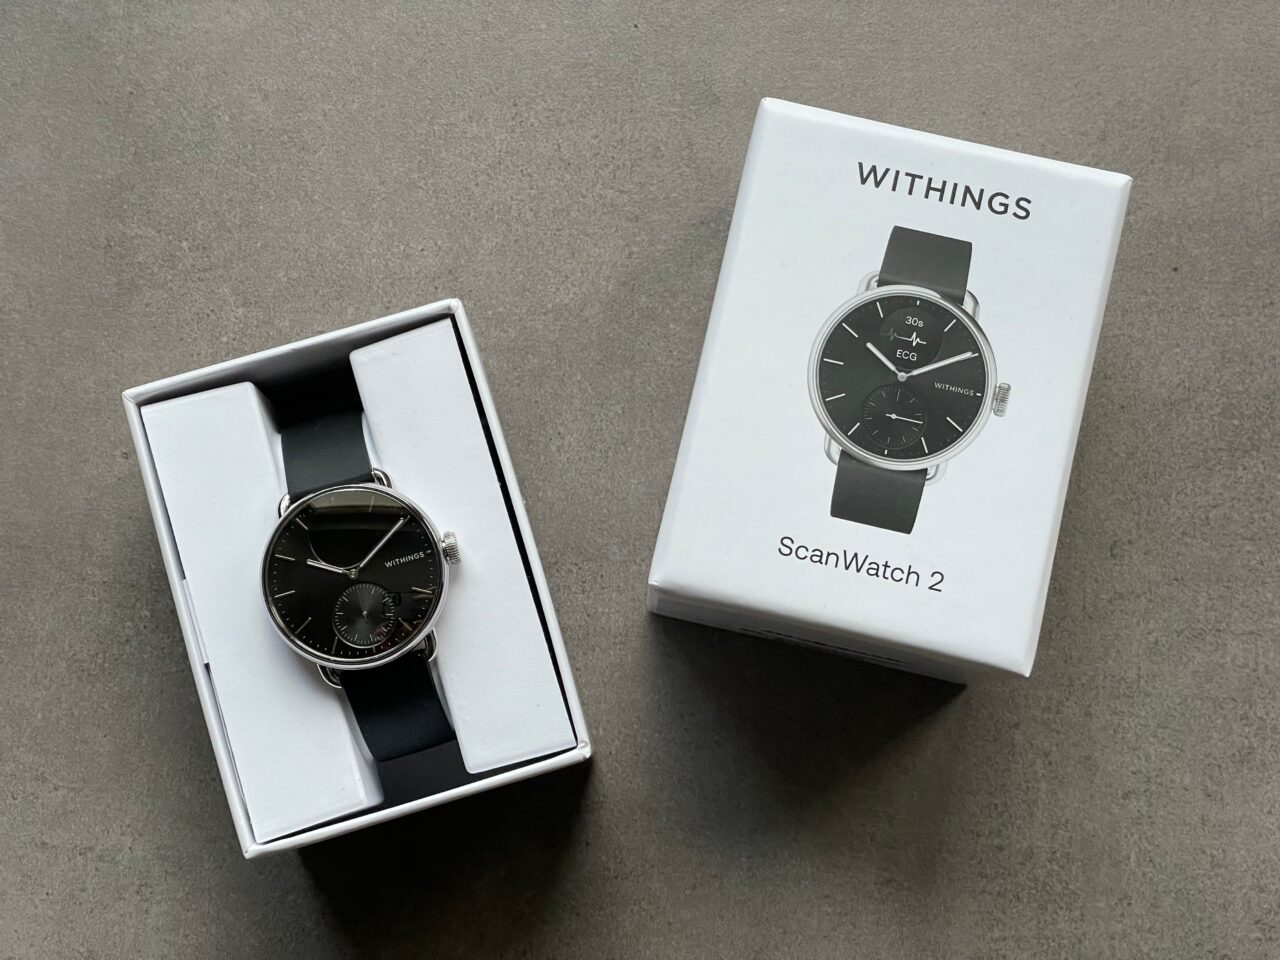 Zegarek Withings ScanWatch 2 leżący w otwartym pudełku obok zamkniętego opakowania, na szarym tle.